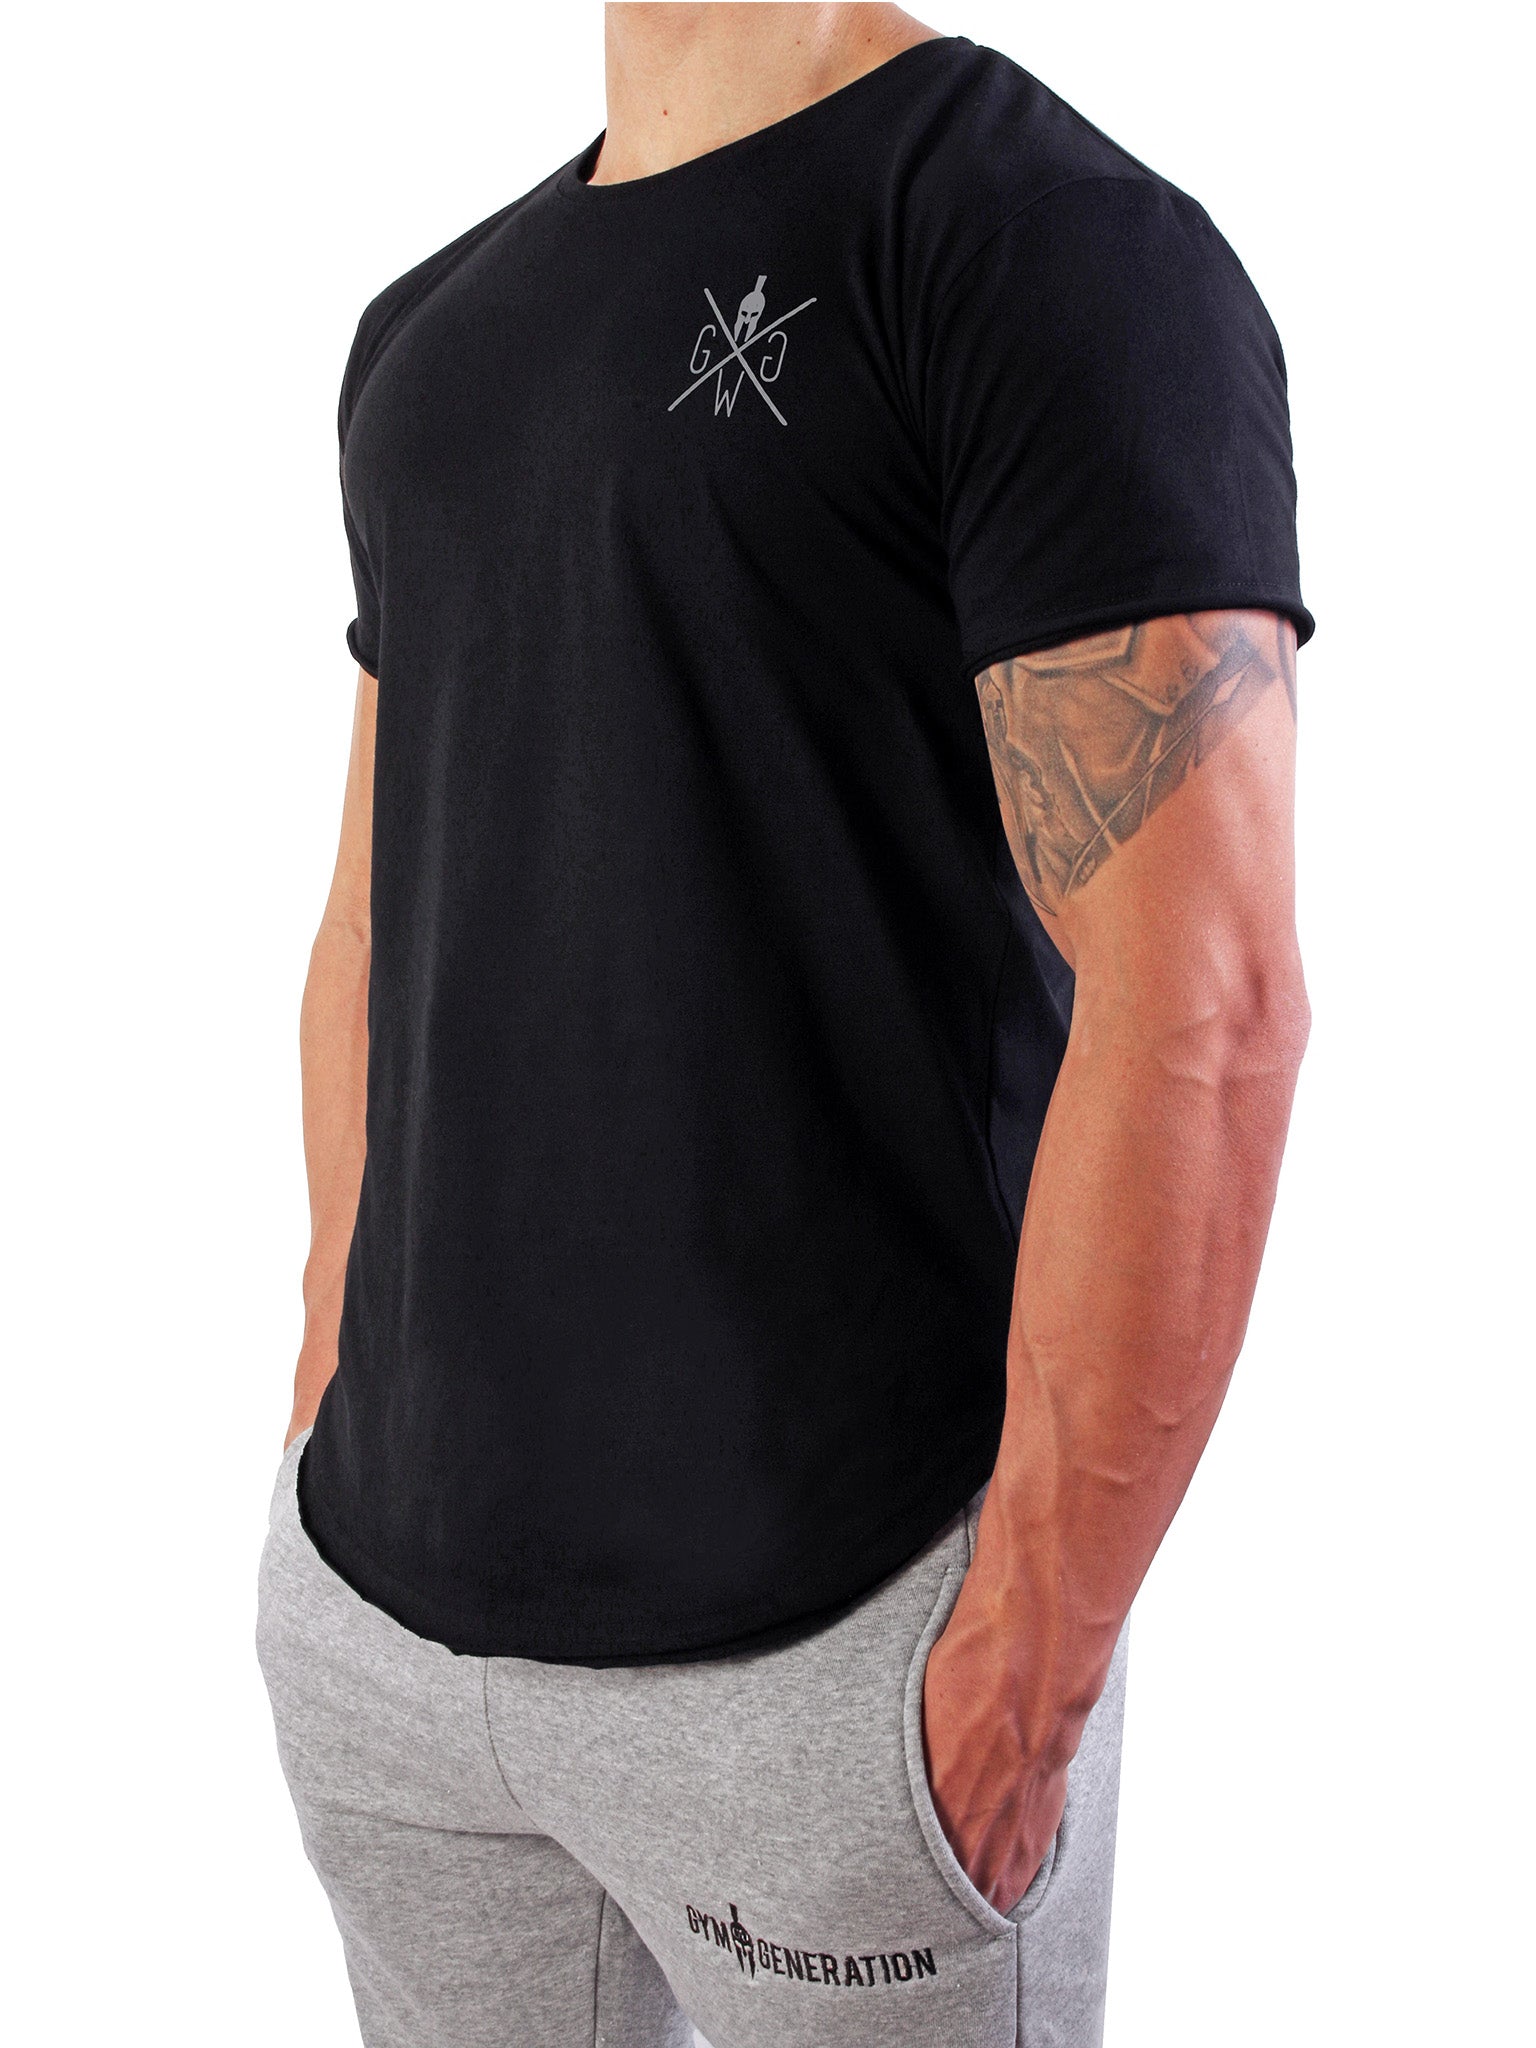 Bequemes und stilvolles Herren T-Shirt von Gym Generation, erhältlich in verschiedenen Größen.